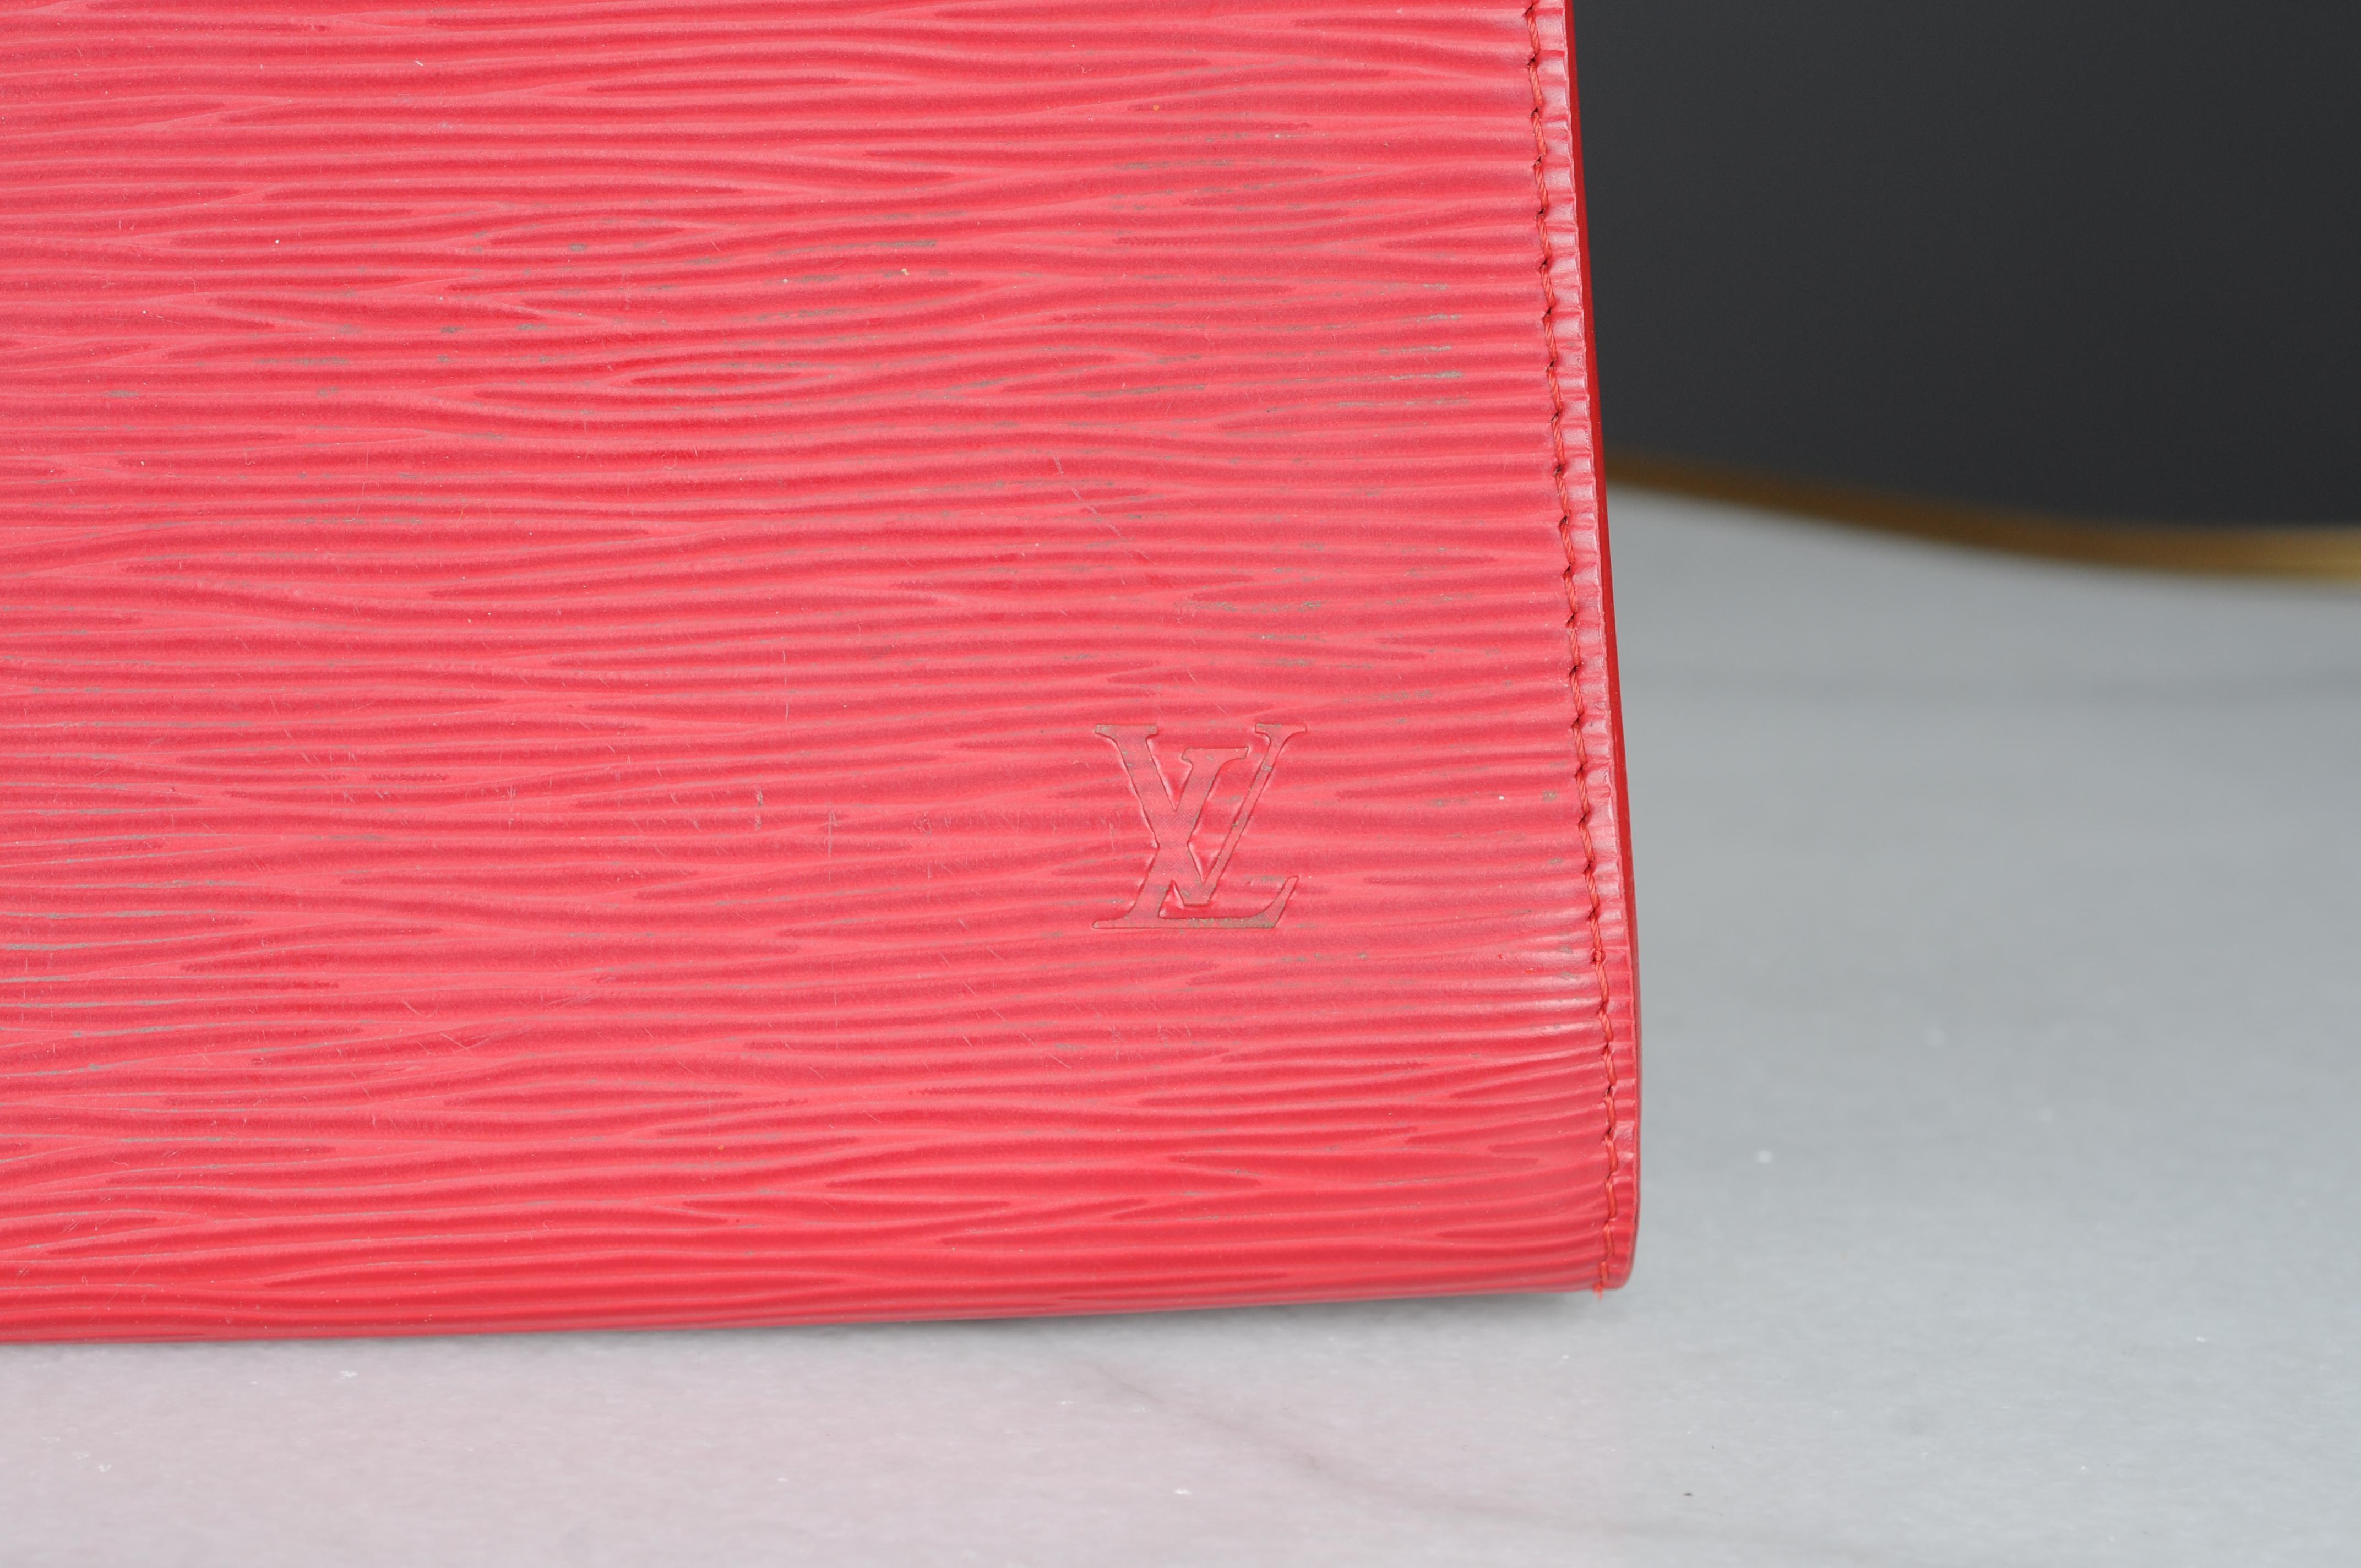 Le sac à main Pochette Accessories est réinterprété dans le cuir Epi caractéristique de Louis Vuitton. Le design emblématique présente une silhouette élégante et horizontale qui évoque subtilement le style vintage. Une lanière de cuir amovible